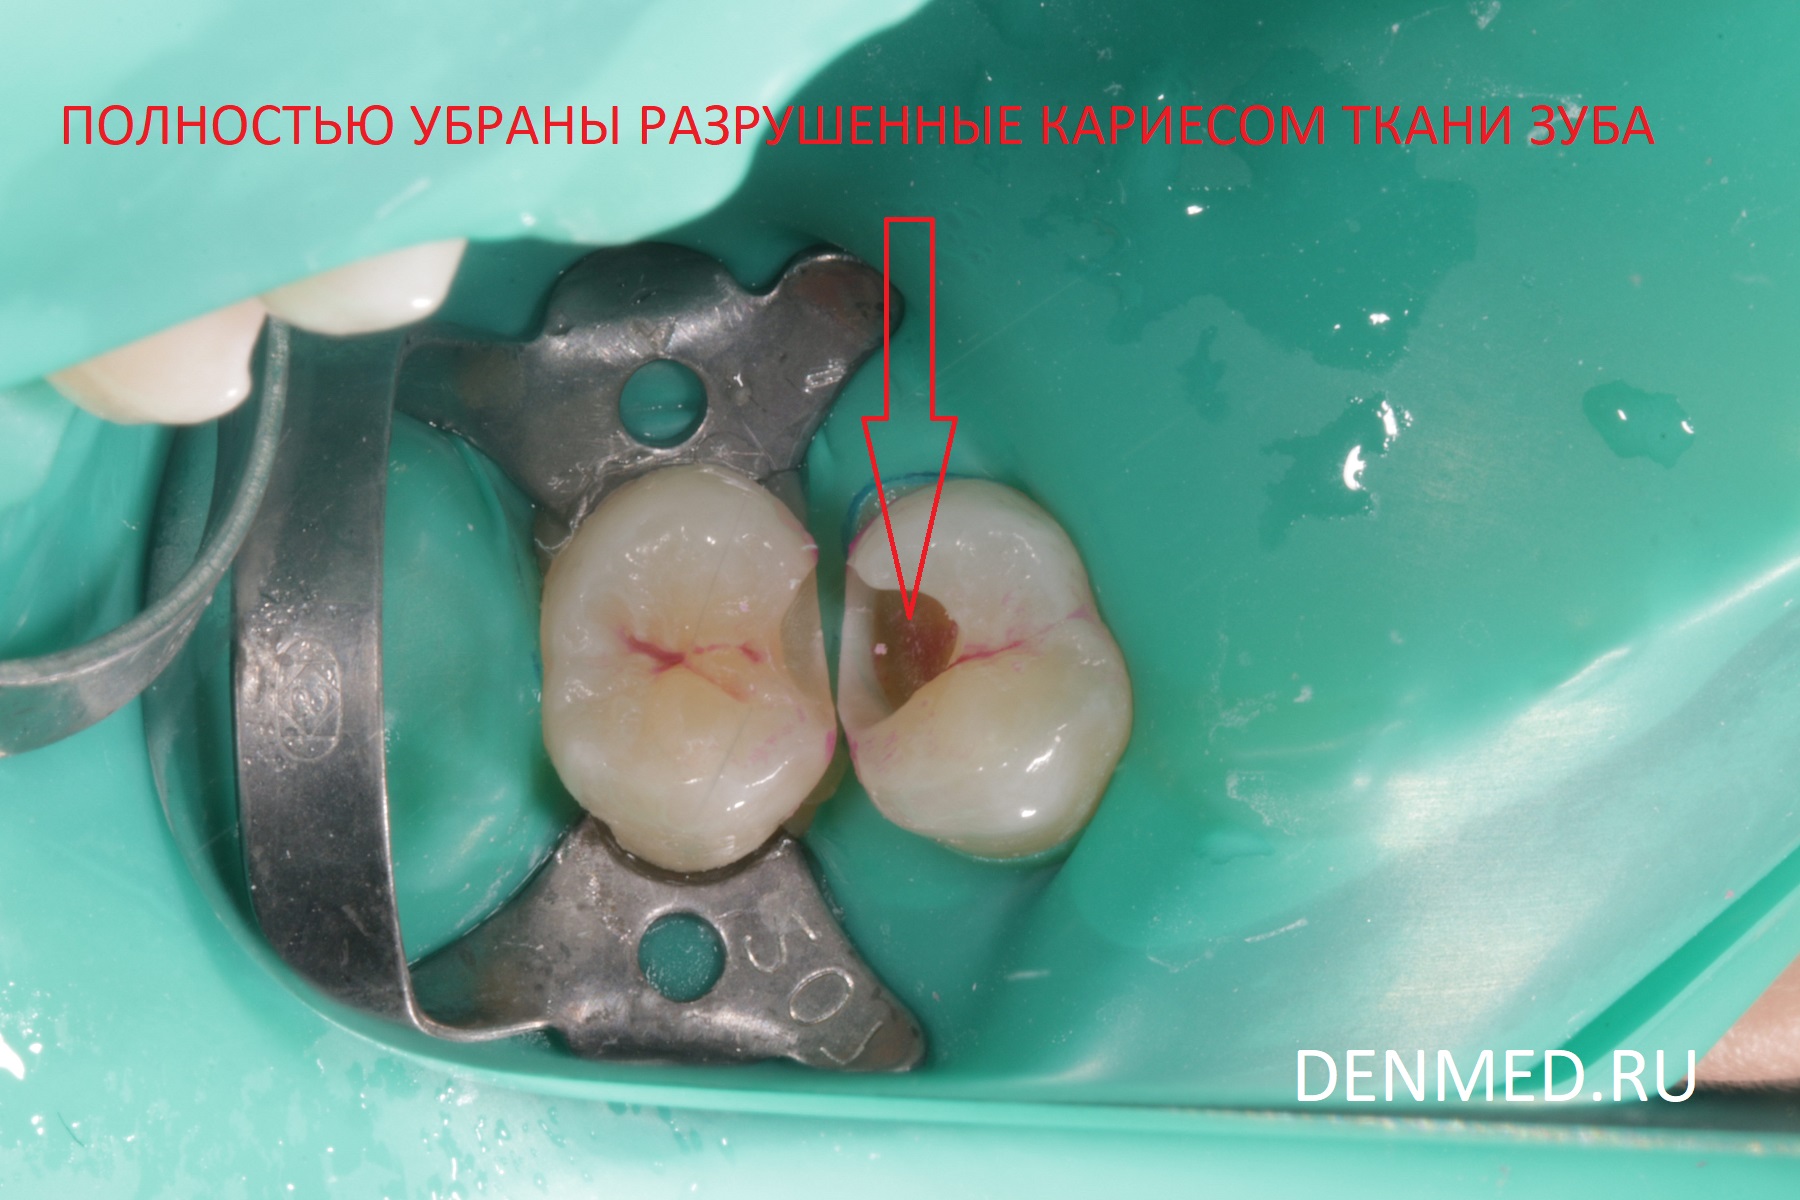 Полностью убраны разрушенные кариесом ткани зуба